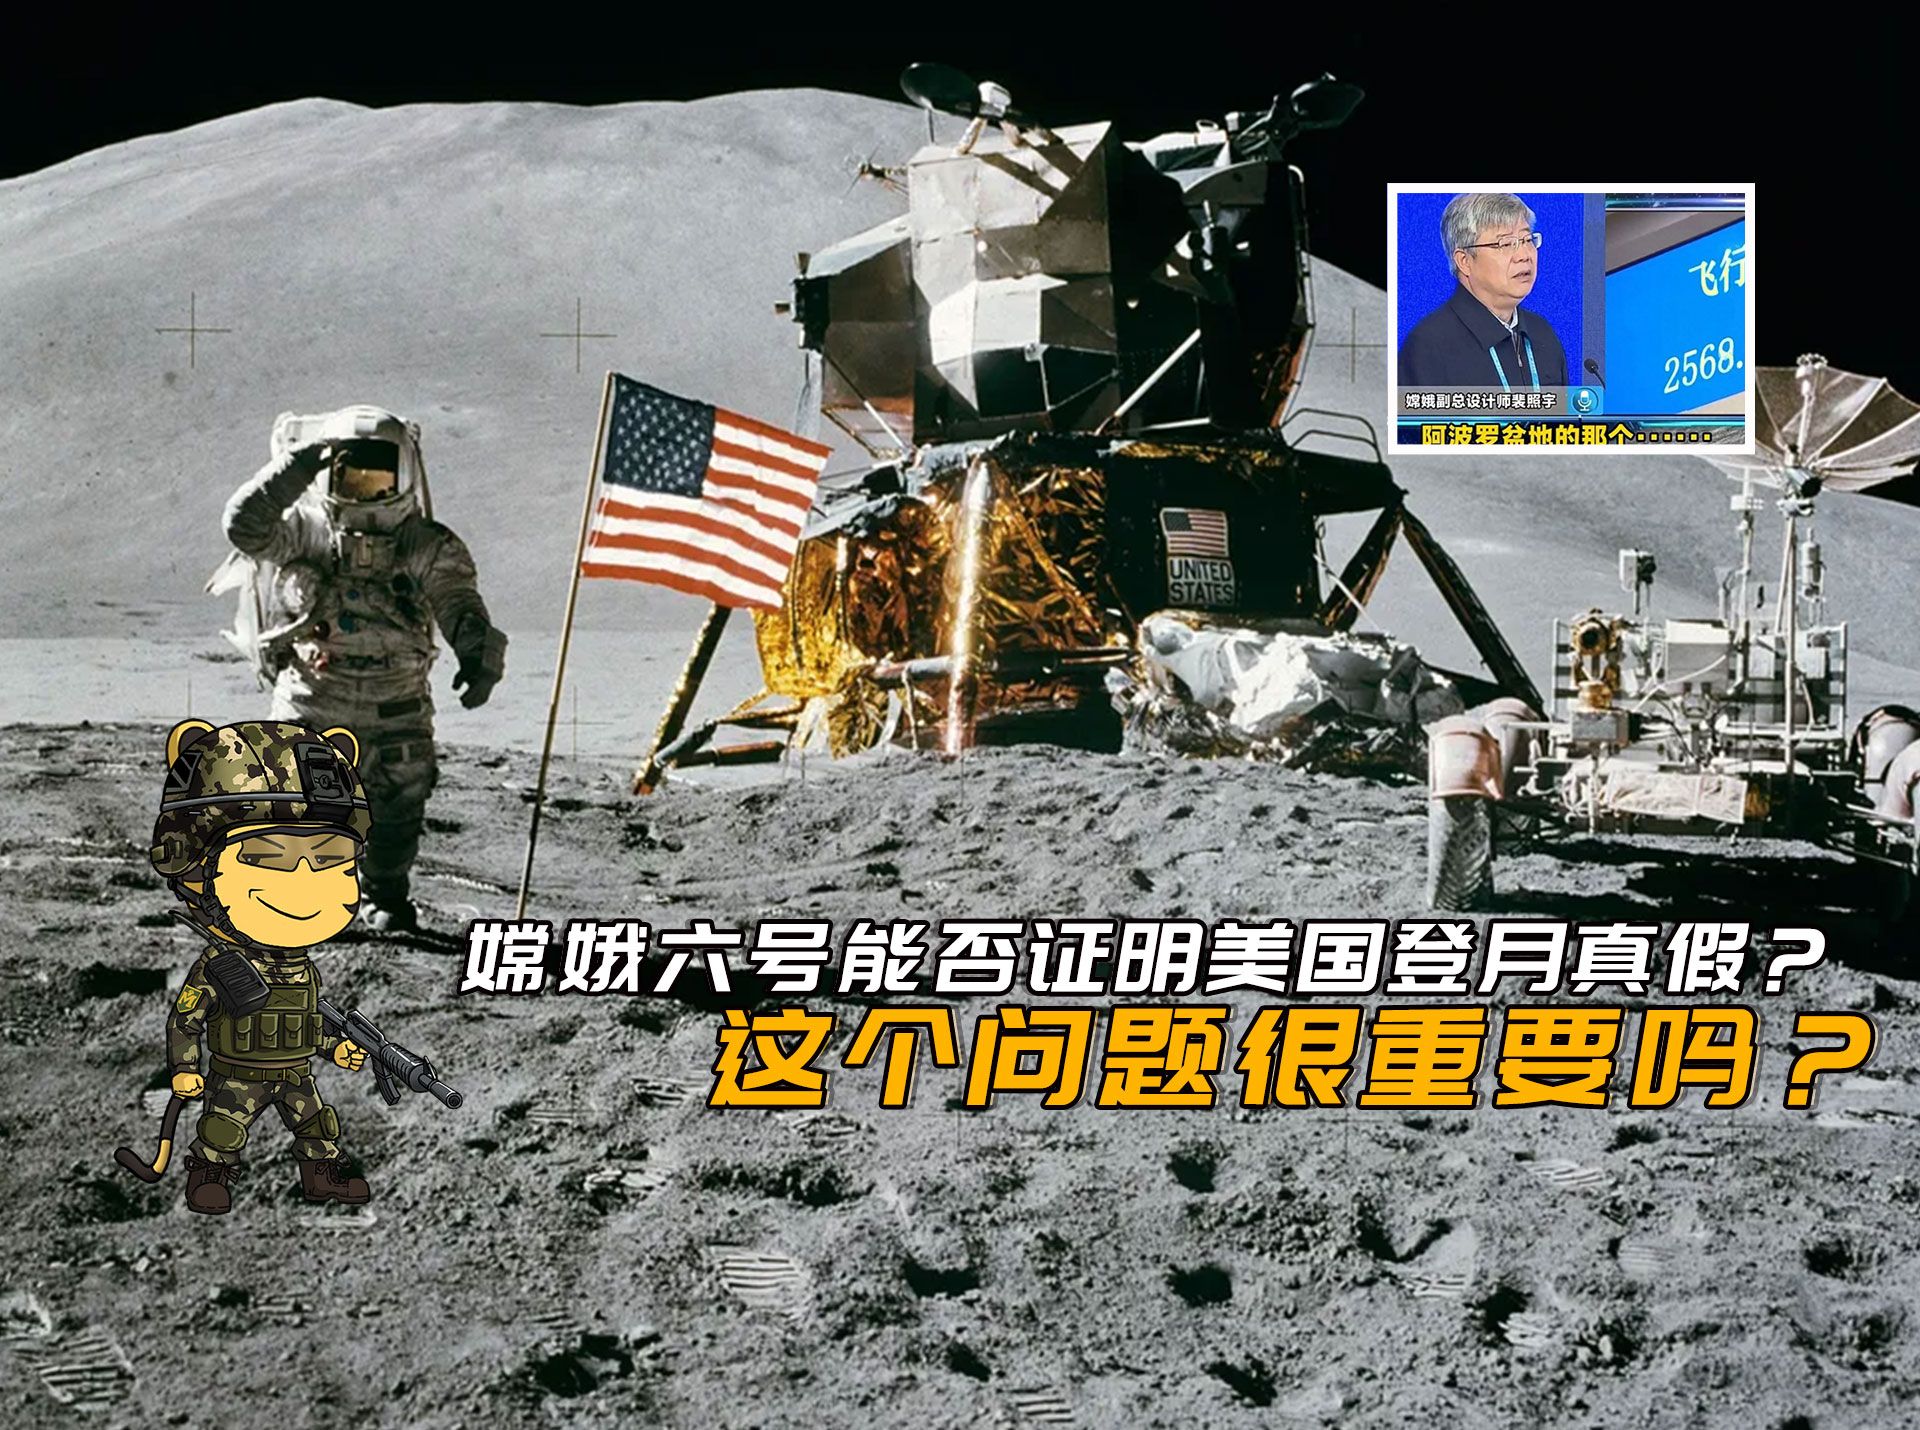 嫦娥六号总工程师一句话,能否证明美国登月造假?这些都已不重要